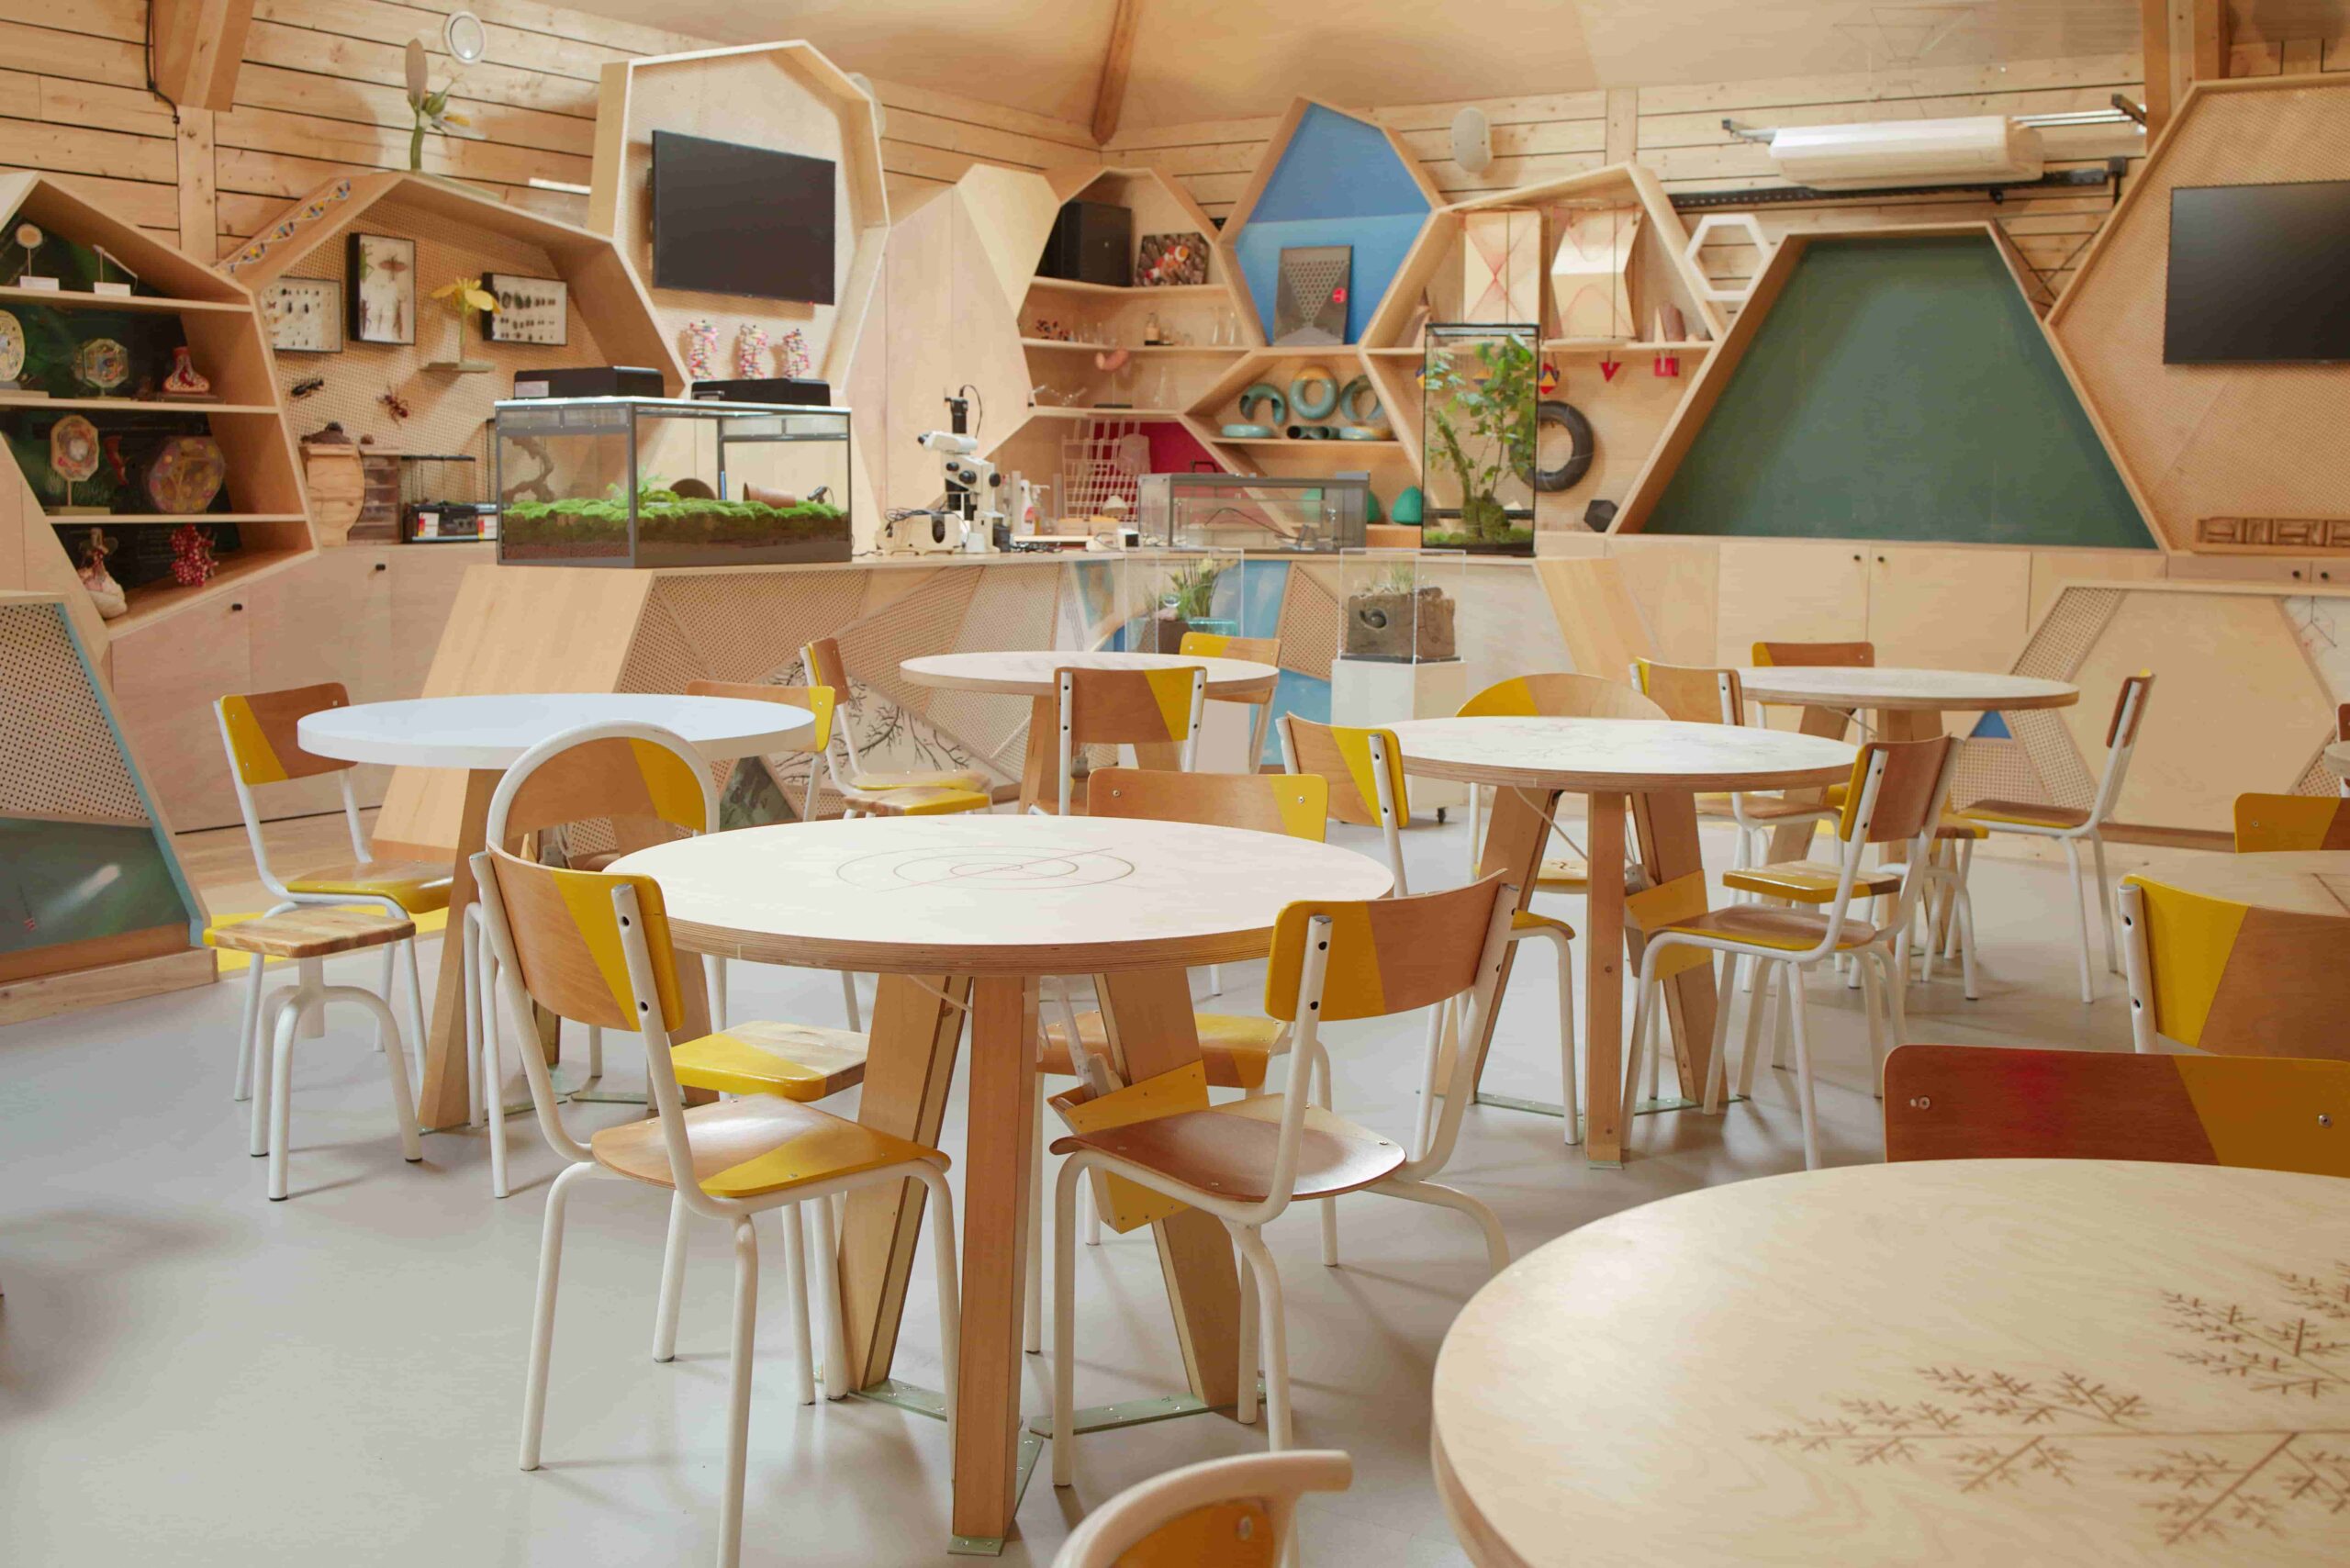 120 chaises ludiques 100% recyclées pour le Palais de la découverte à Paris